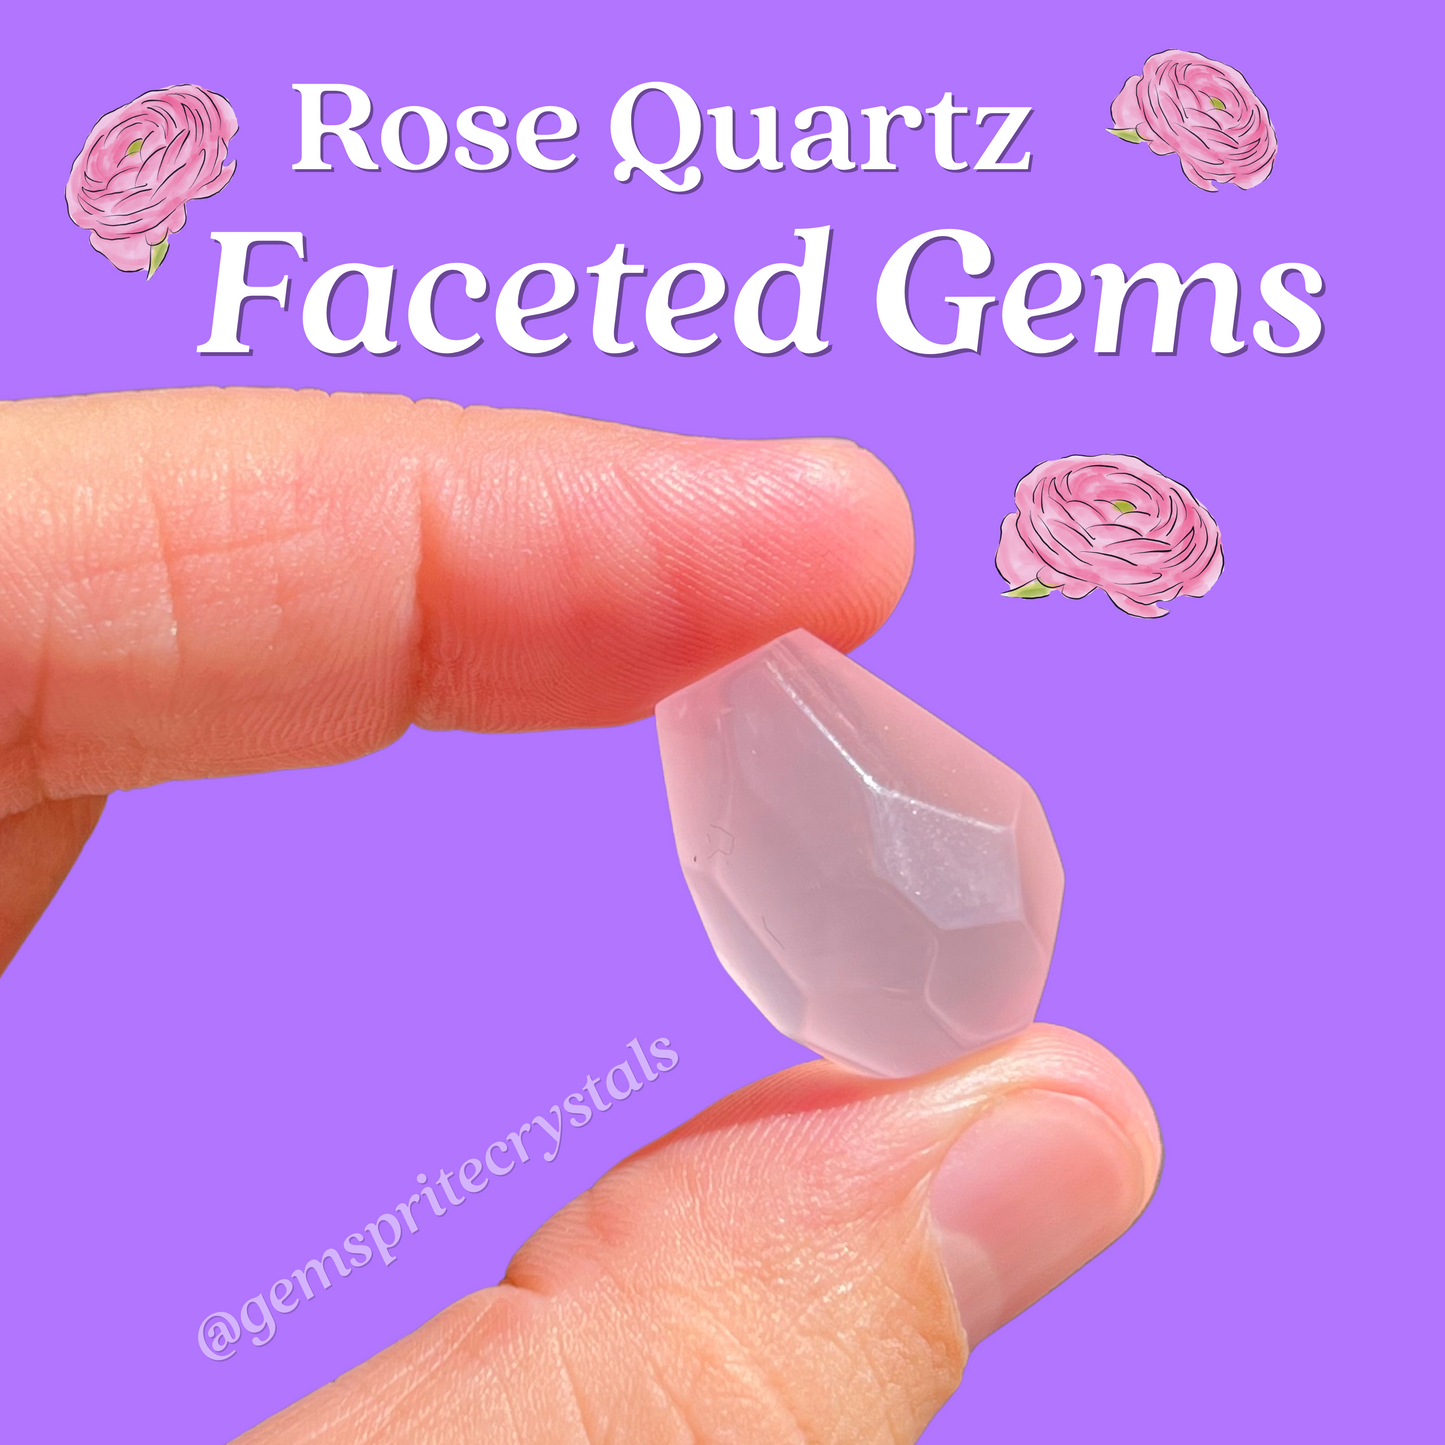 Rose Quartz Faceted Gems